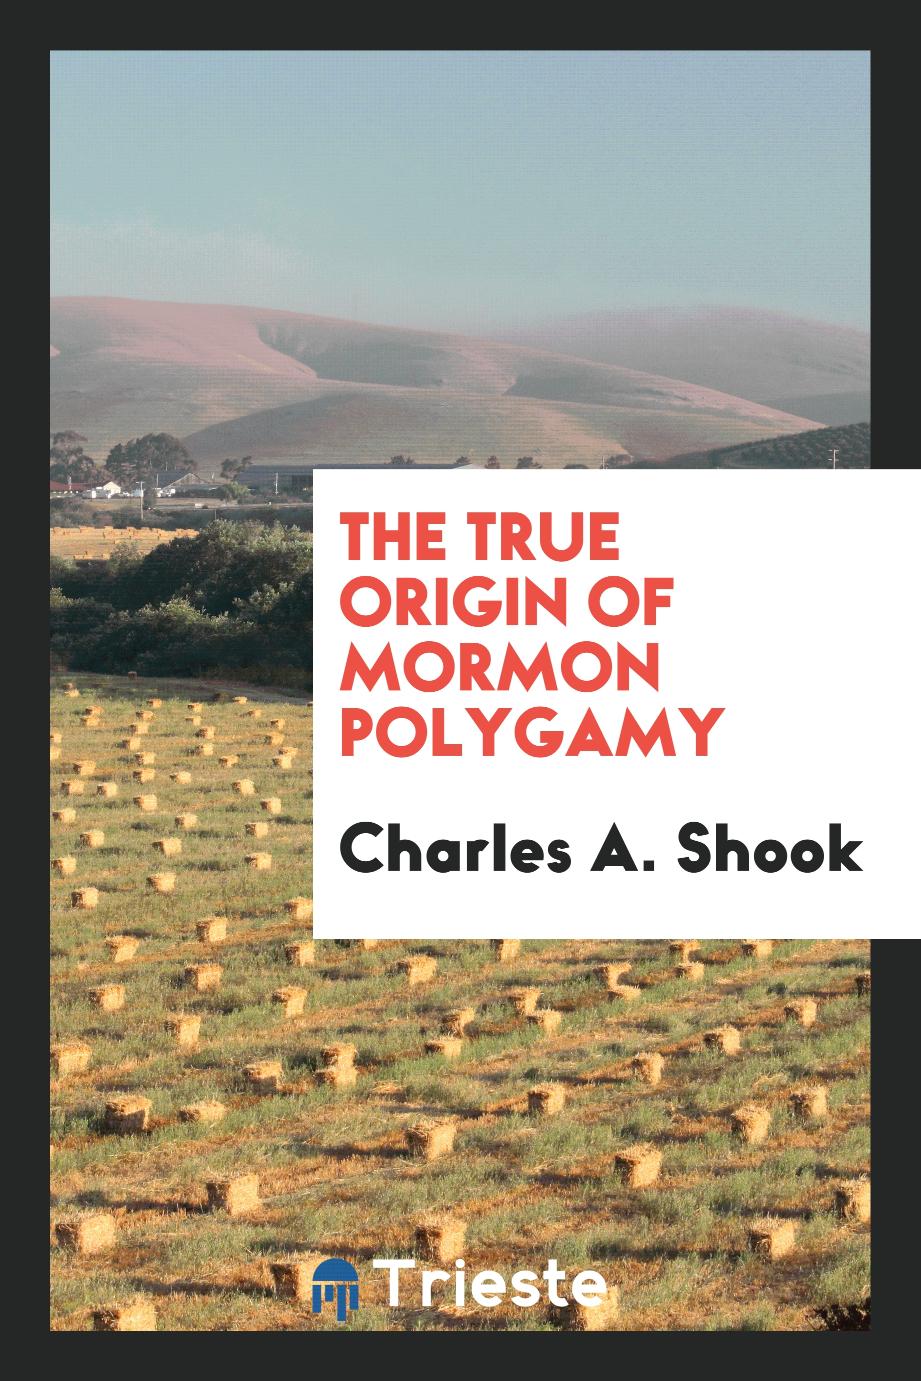 The true origin of Mormon polygamy